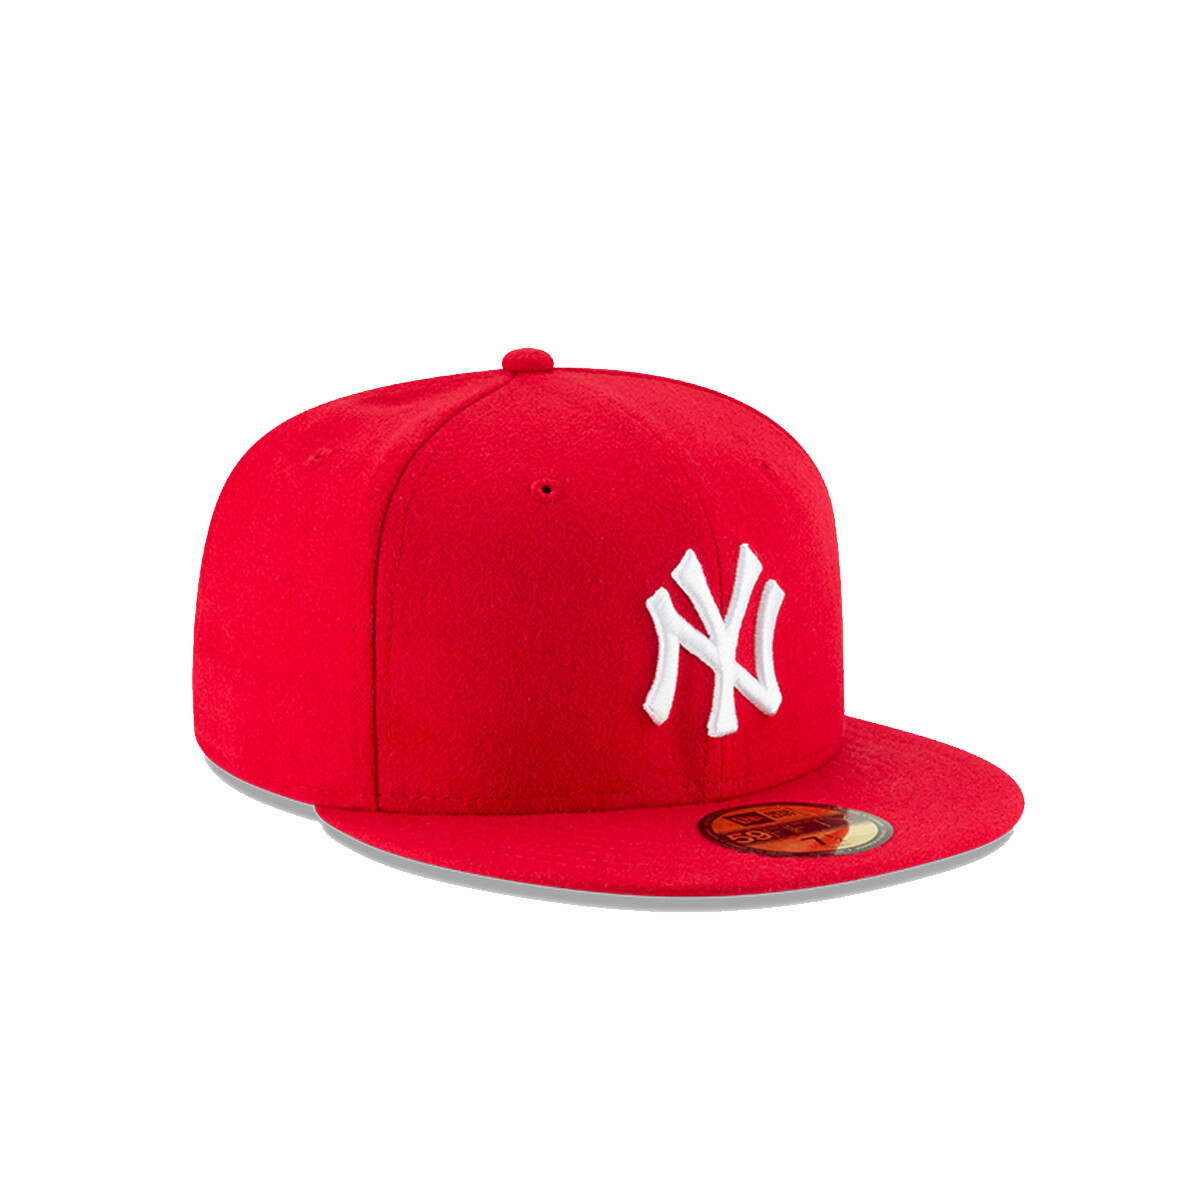 Gorro New Era - New York Yankees MLB 59FIFTY - 11591122 - RED 